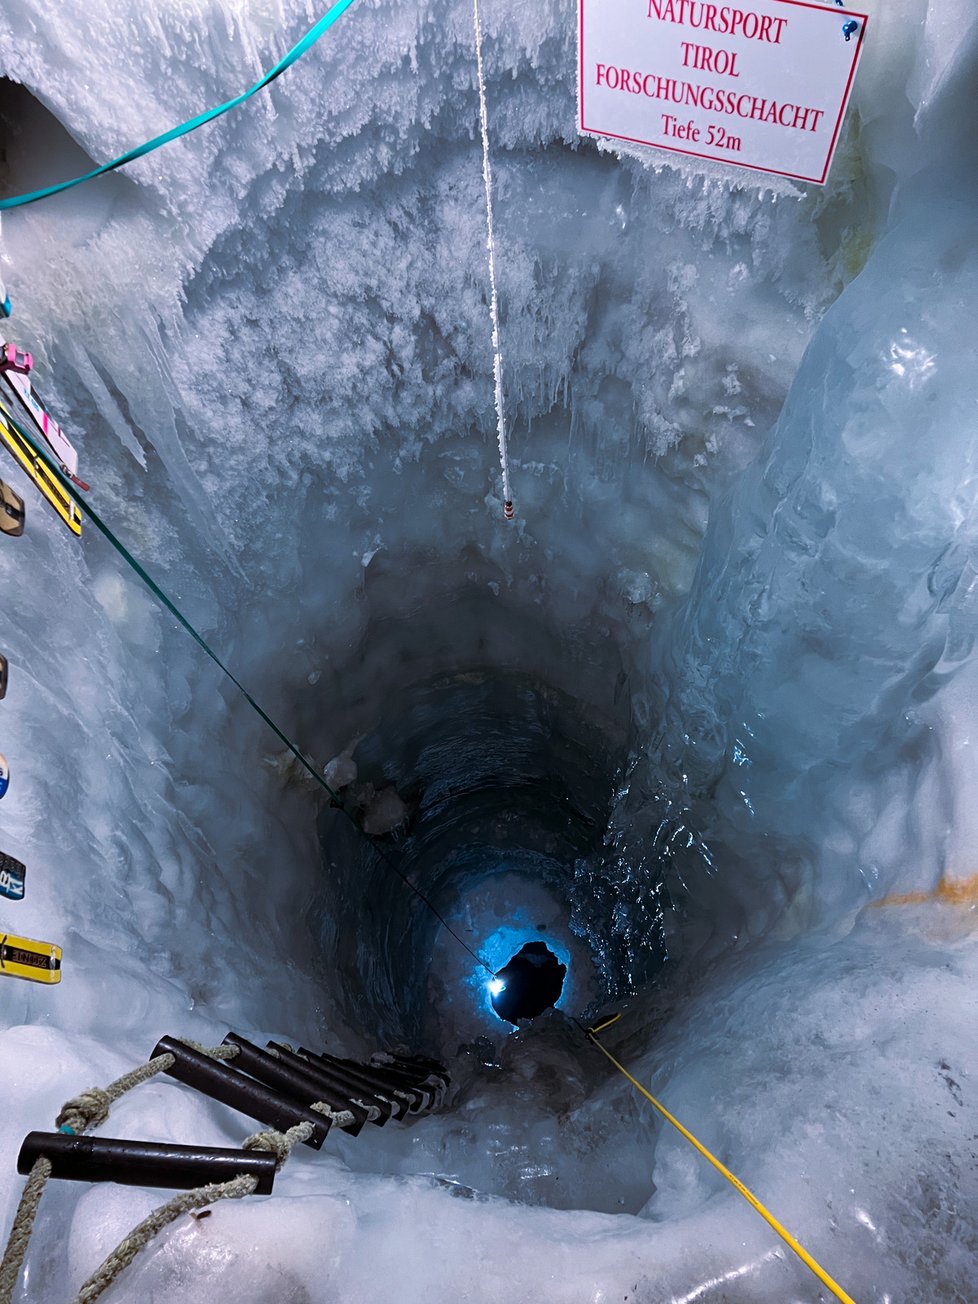 Šachta v ledové jeskyni slouží pro výzkum.